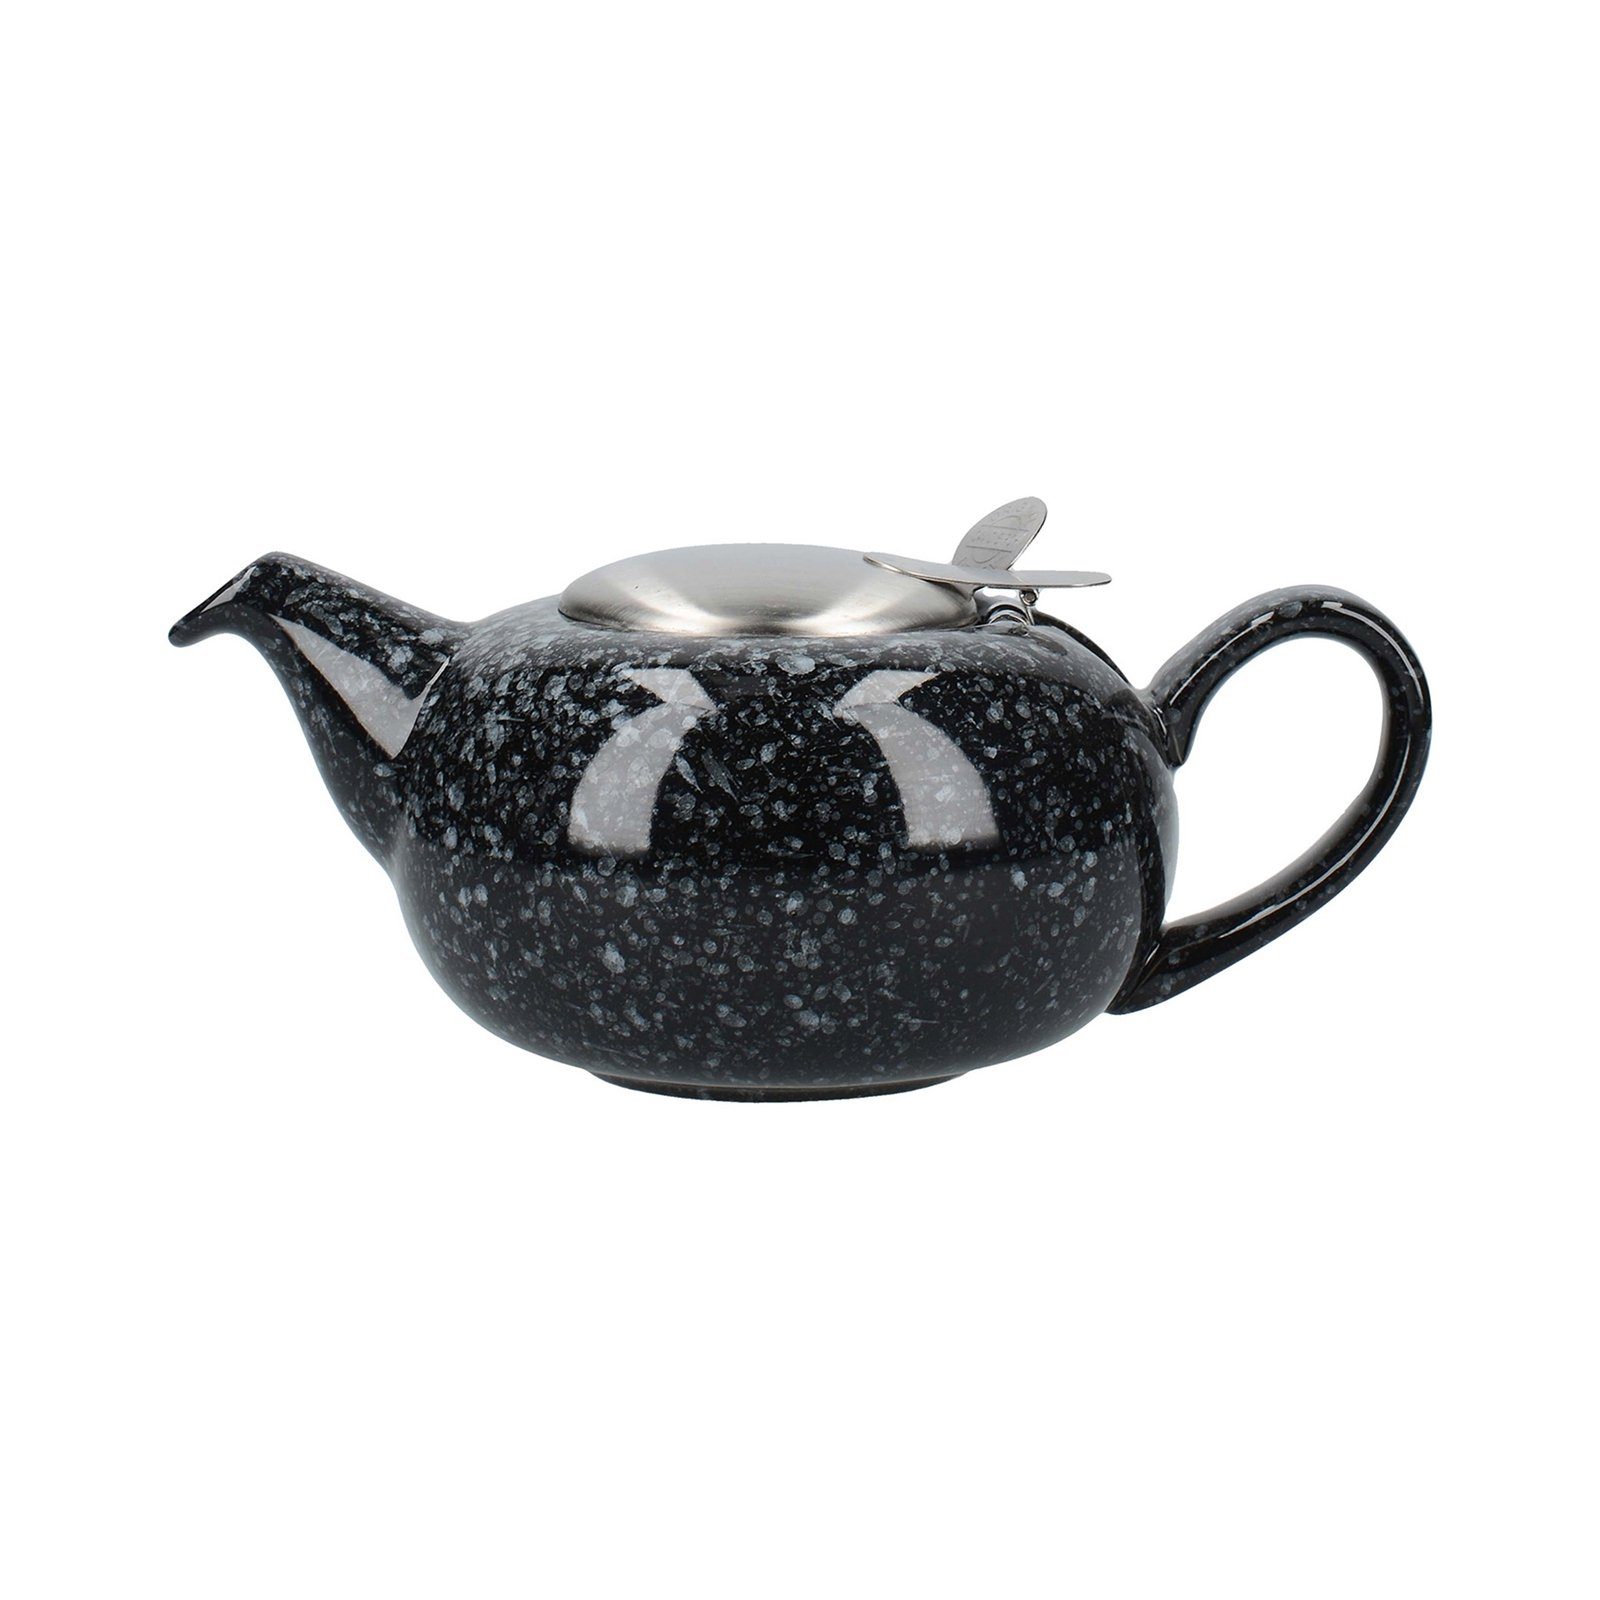 Neuetischkultur Teekanne Teekanne mit Sieb, 2 Tassen 500 ml, Keramik, 0.5 l Schwarz marmoriert